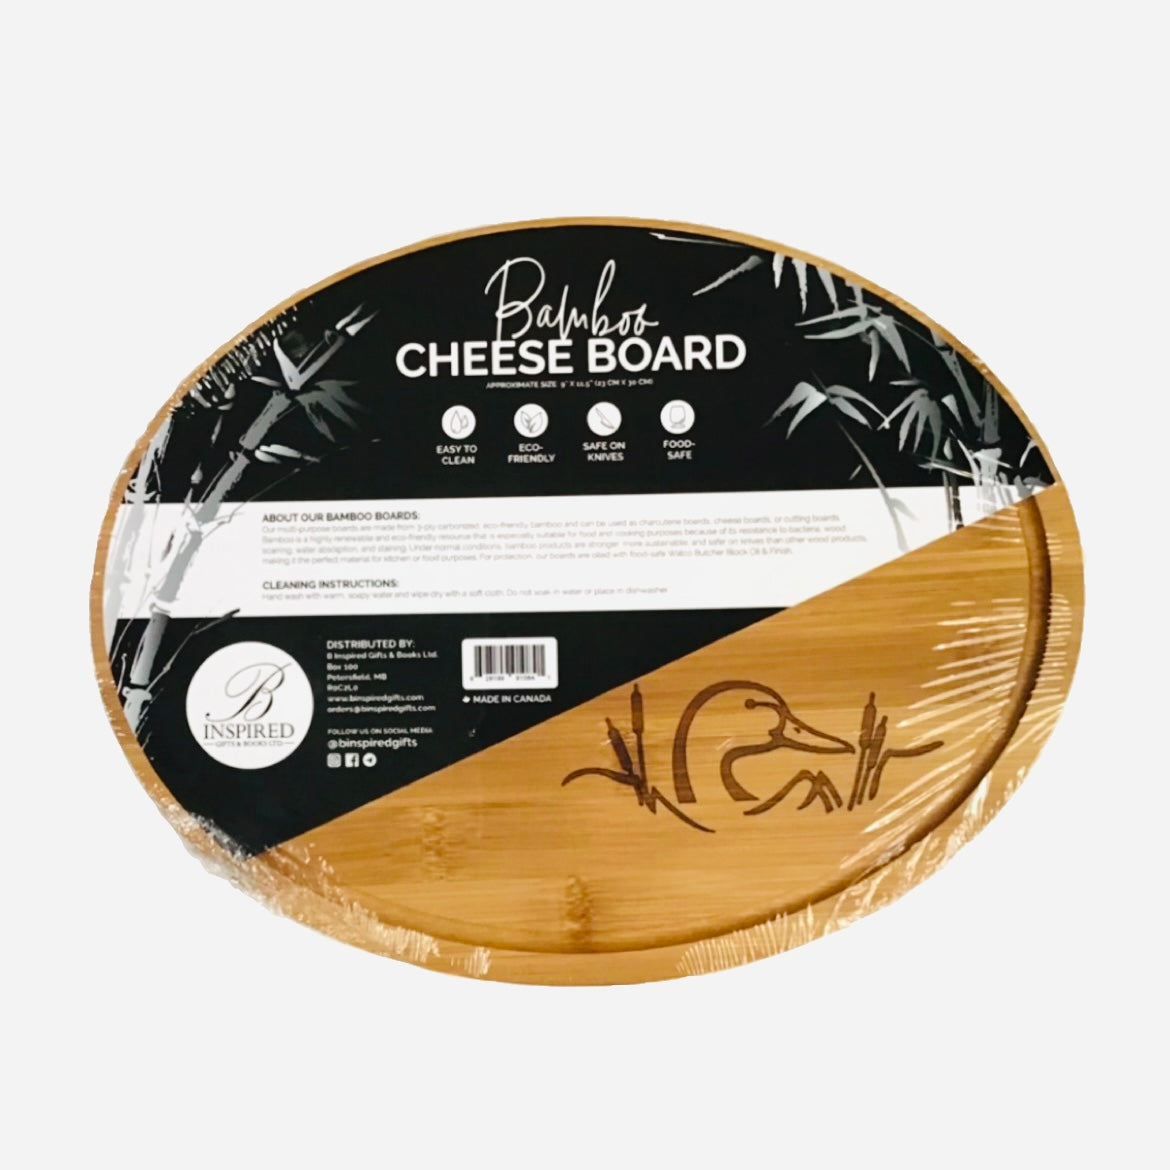 Manitoba-made circular Cheese Board (9" x 11.5")